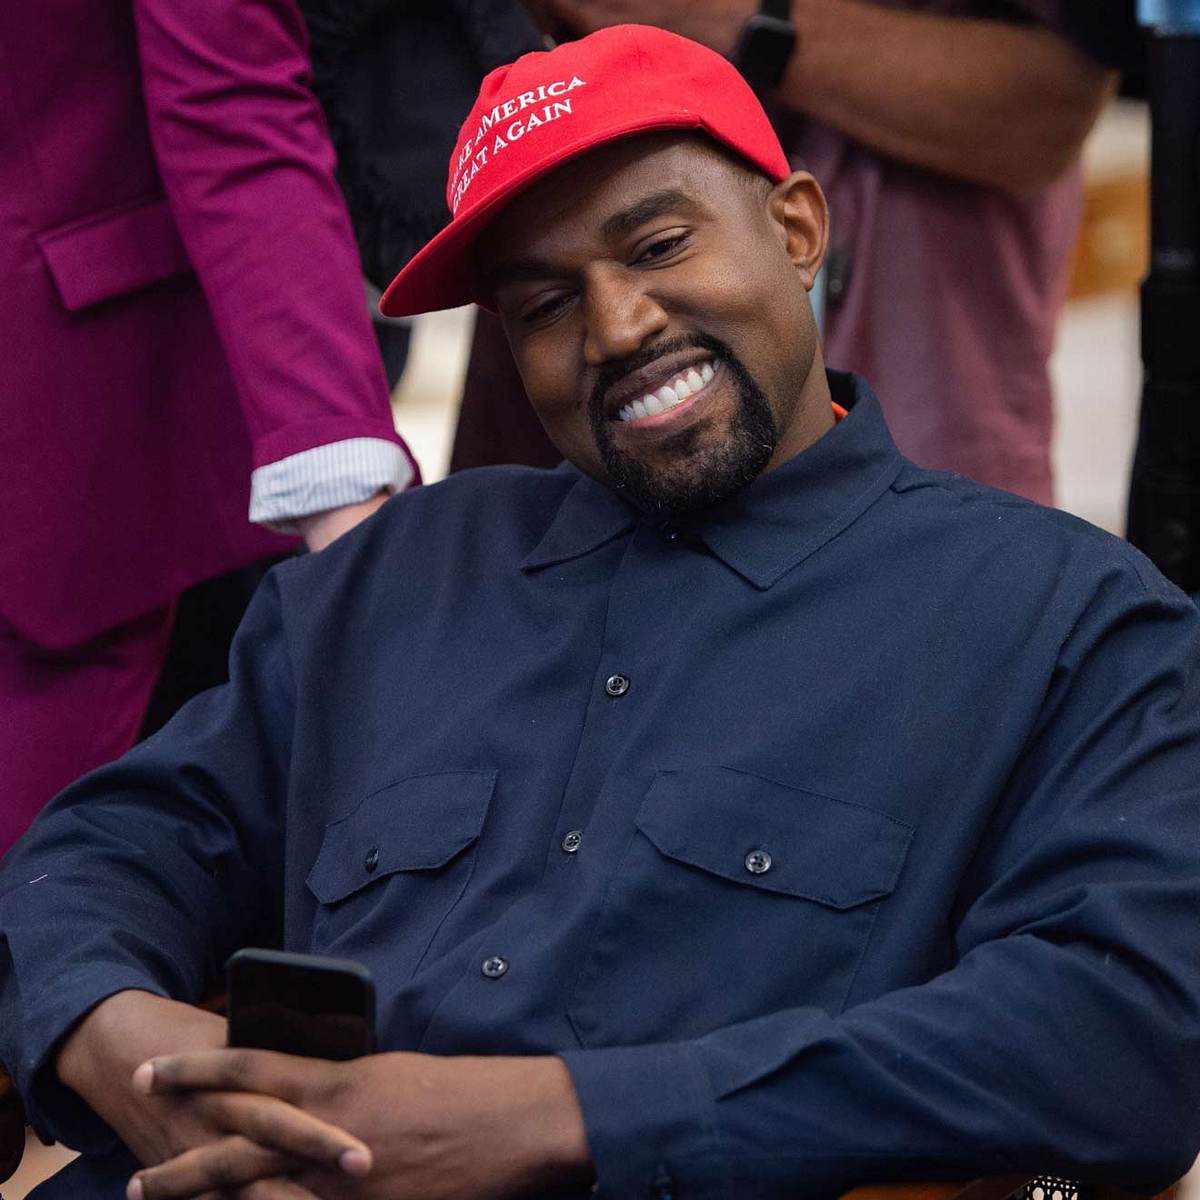 Stars, die Trump wählen Kanye West